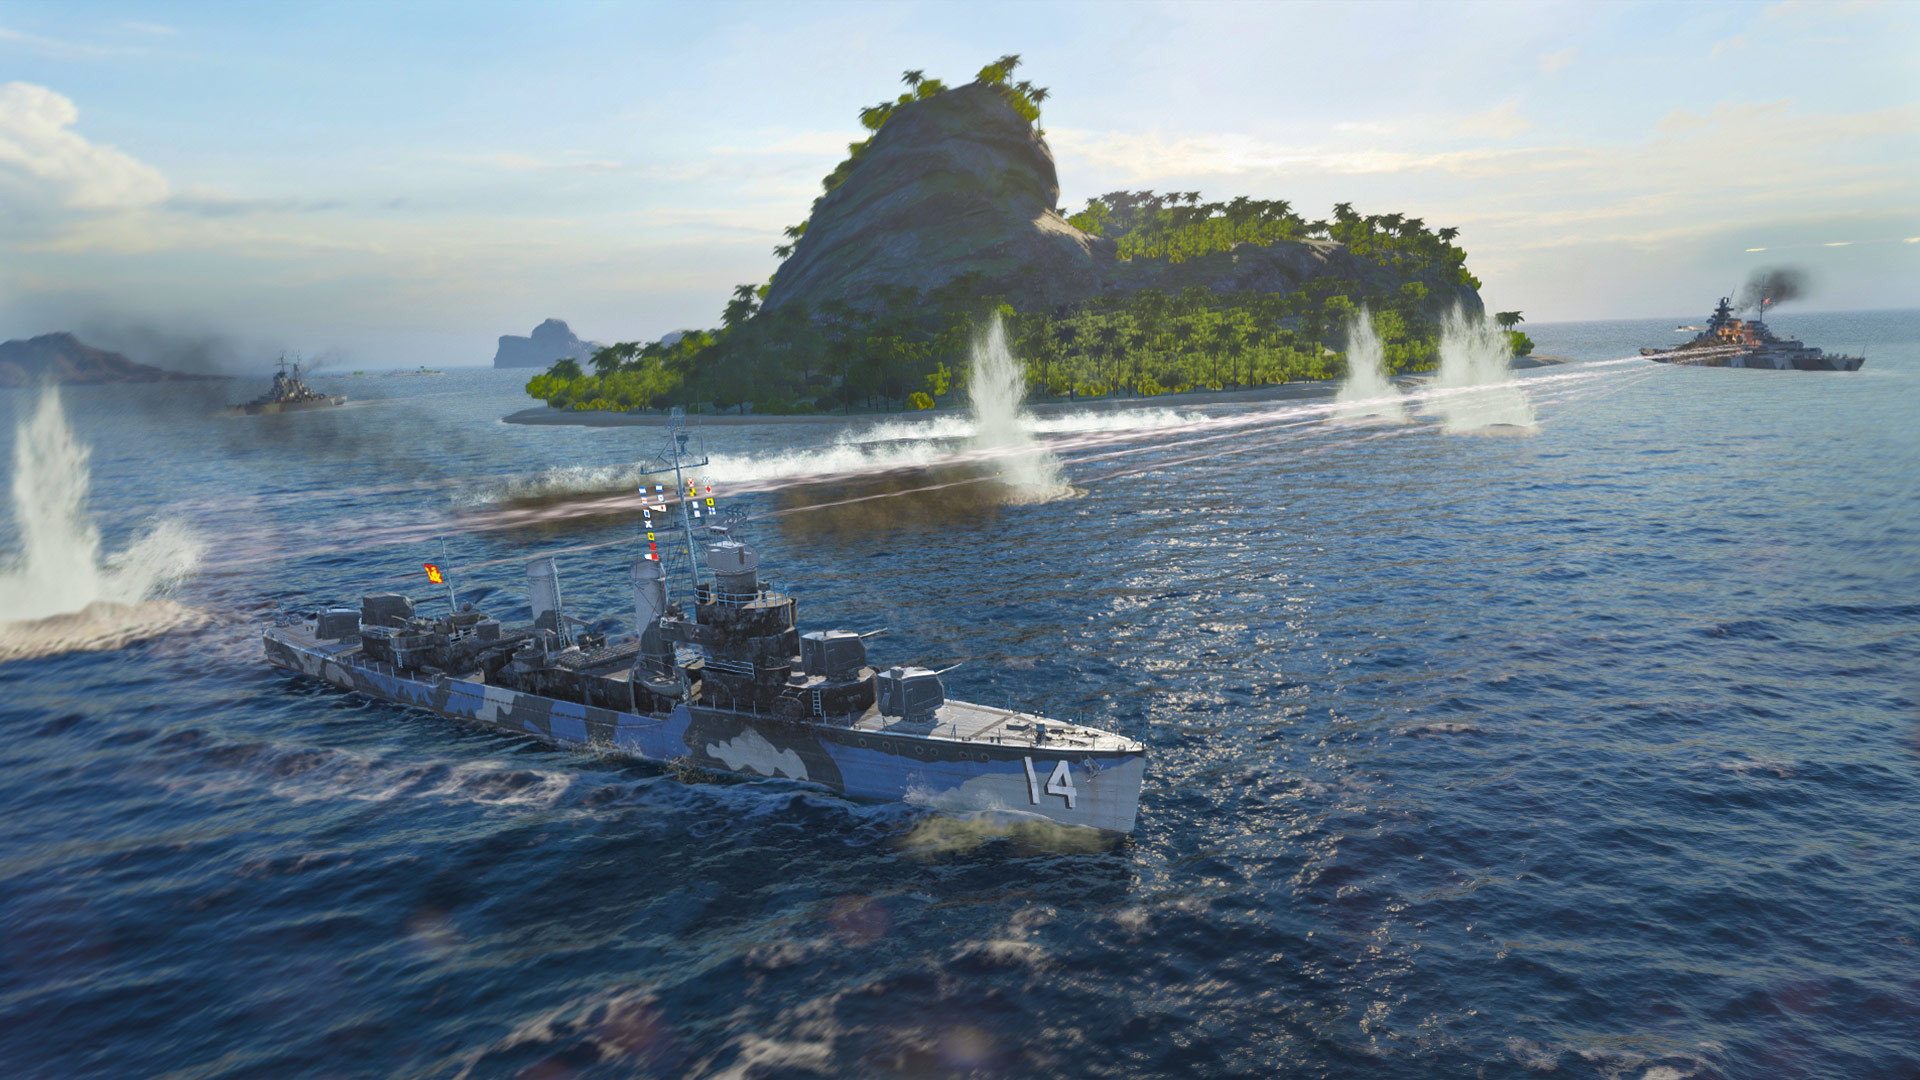 World of Warships': Entenda como um navio é recriado no jogo - Poder Naval